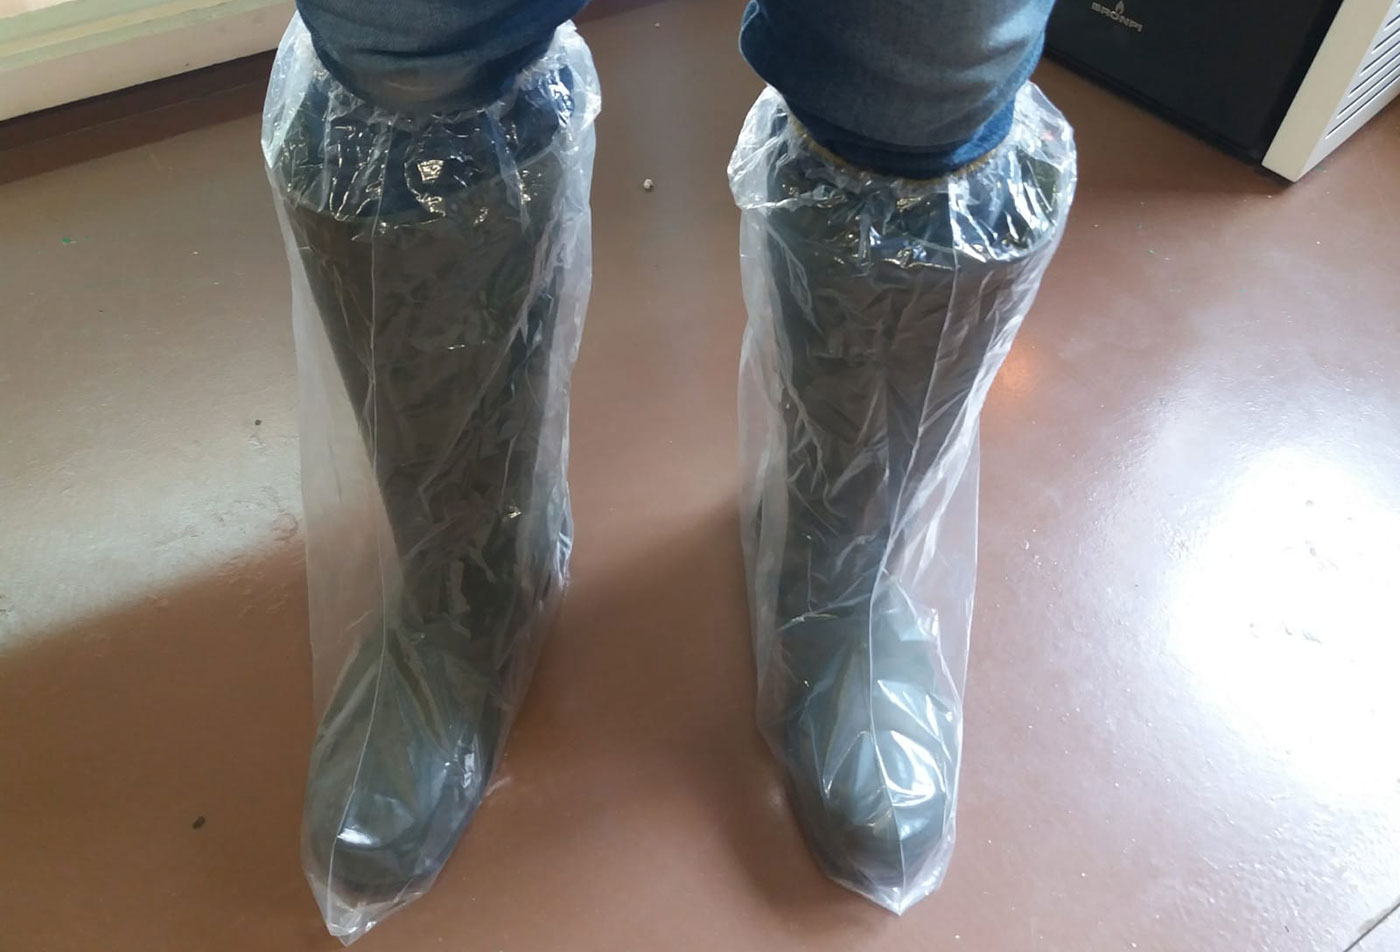 Las botas de plástico ayudan a prevenir la contaminación cruzada a través del calzado